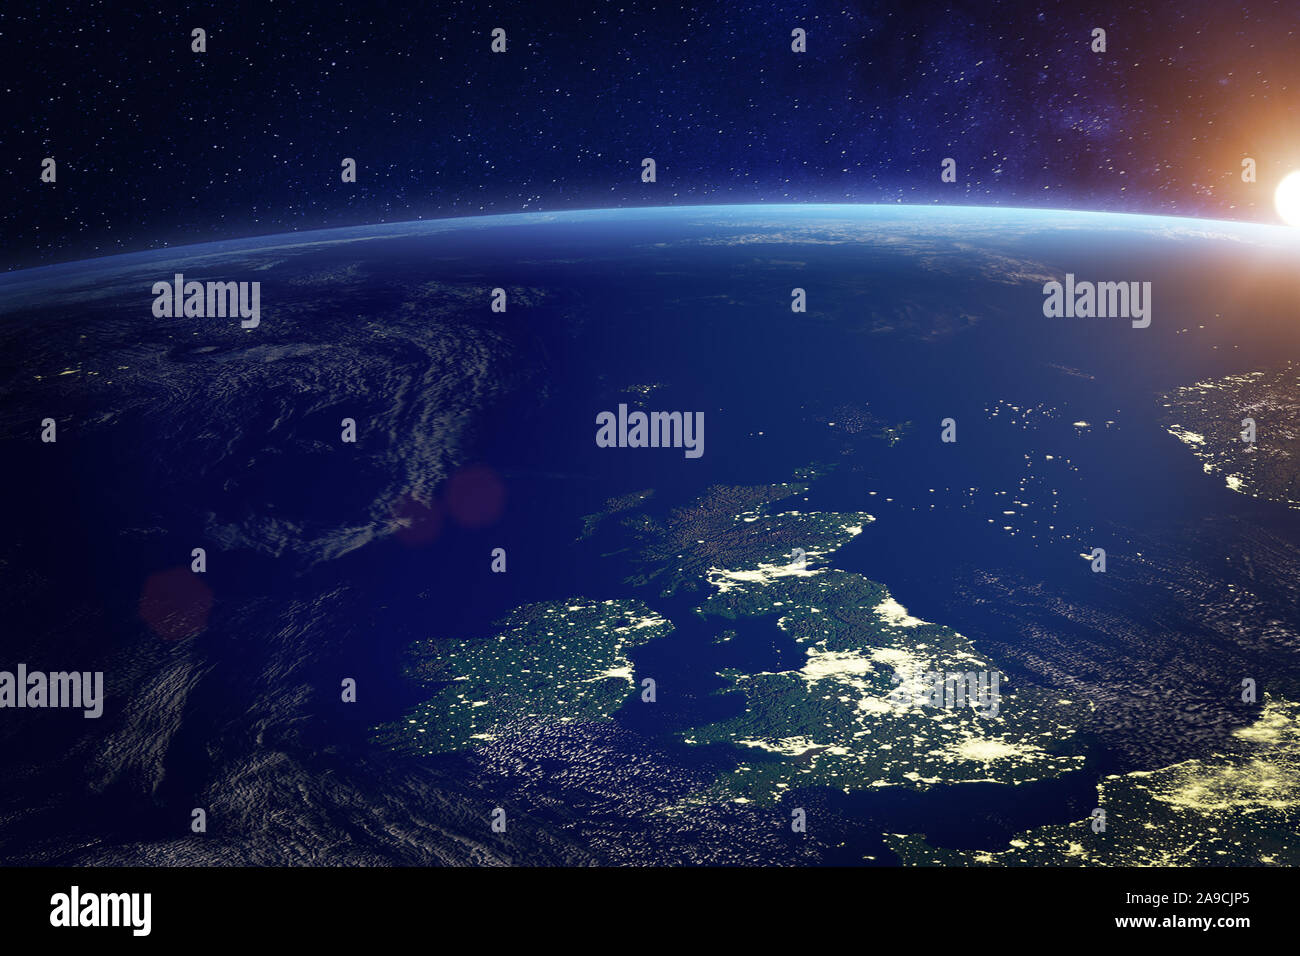 Regno Unito (UK) dallo spazio durante la notte con le luci della città della città di Londra, Inghilterra, Galles, Scozia e Irlanda del Nord, la tecnologia di comunicazione, Foto Stock